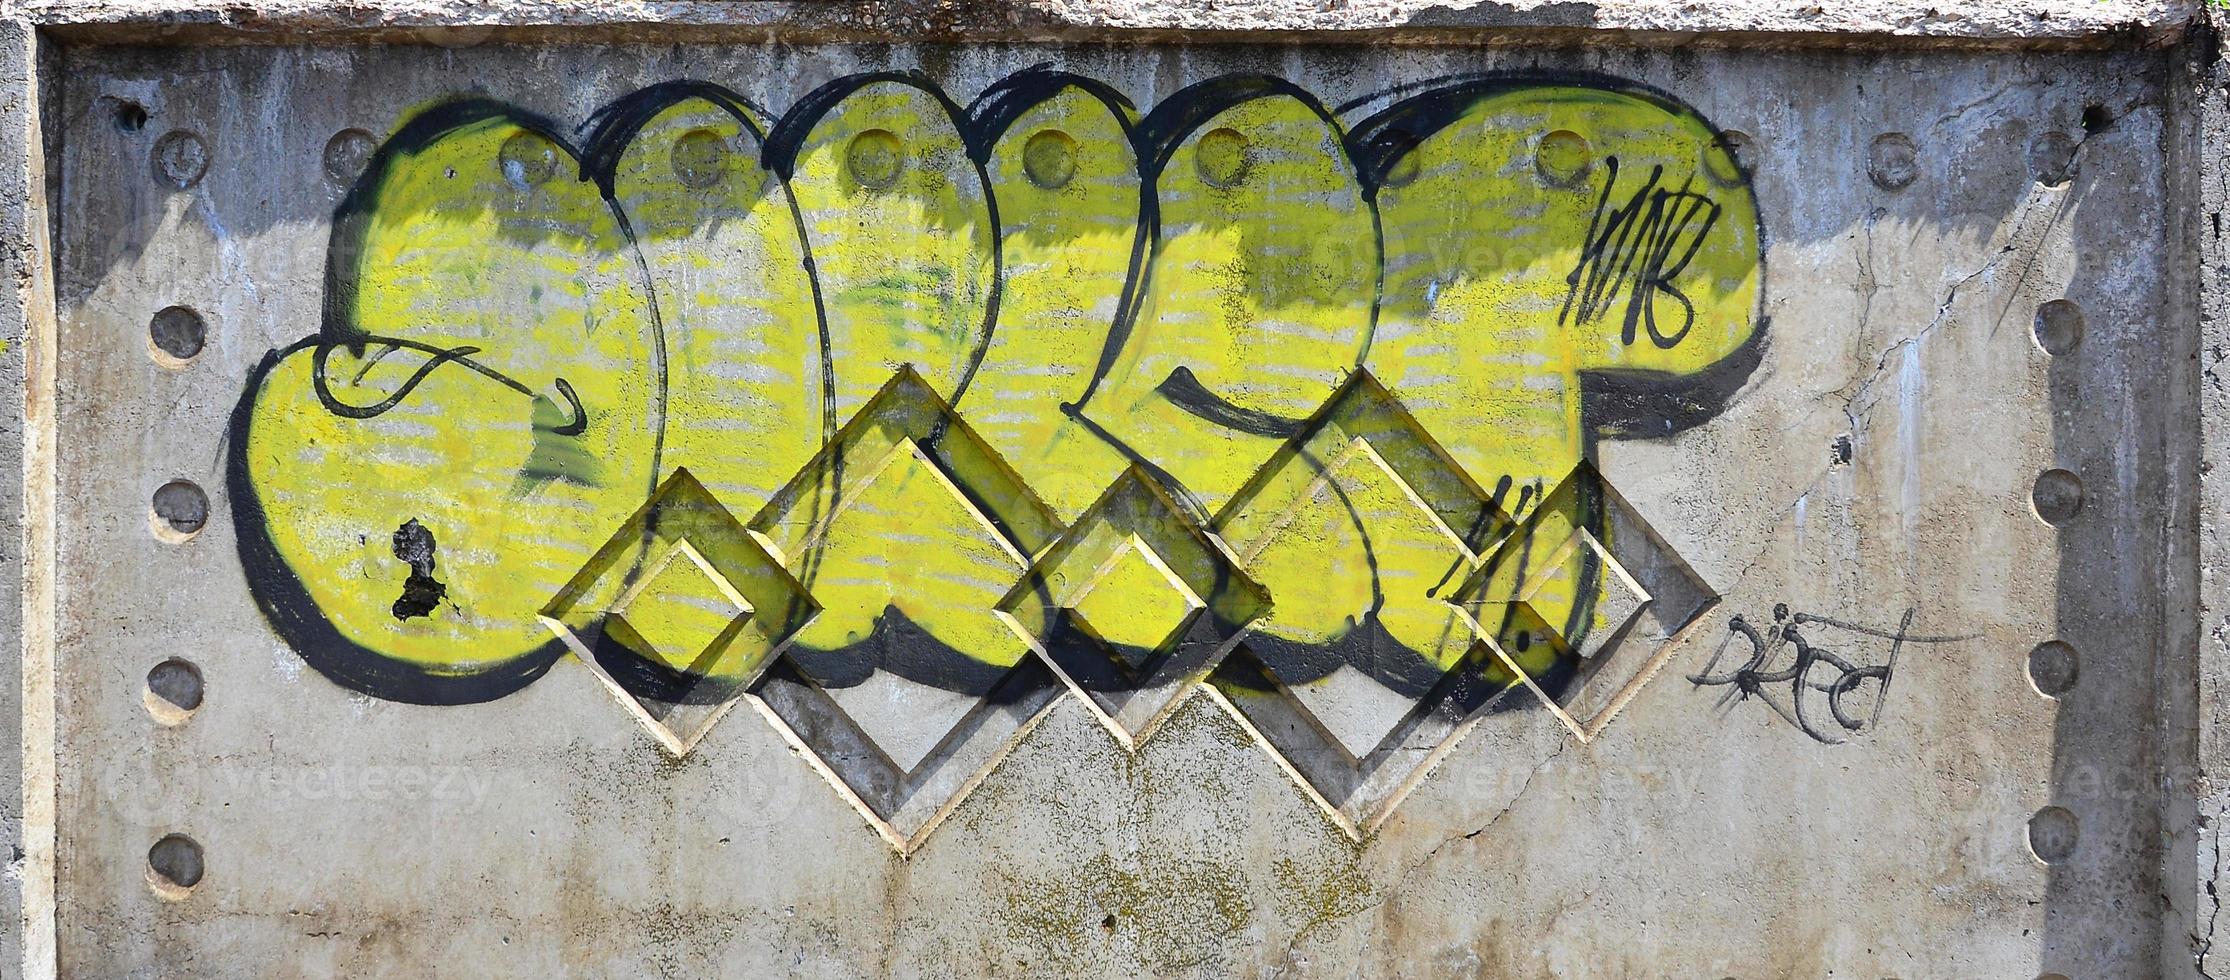 la textura de la pared con graffiti, que se representa en ella. la imagen del grafiti entero y completo del dibujo como recurso para el diseño de proyectos 3d foto